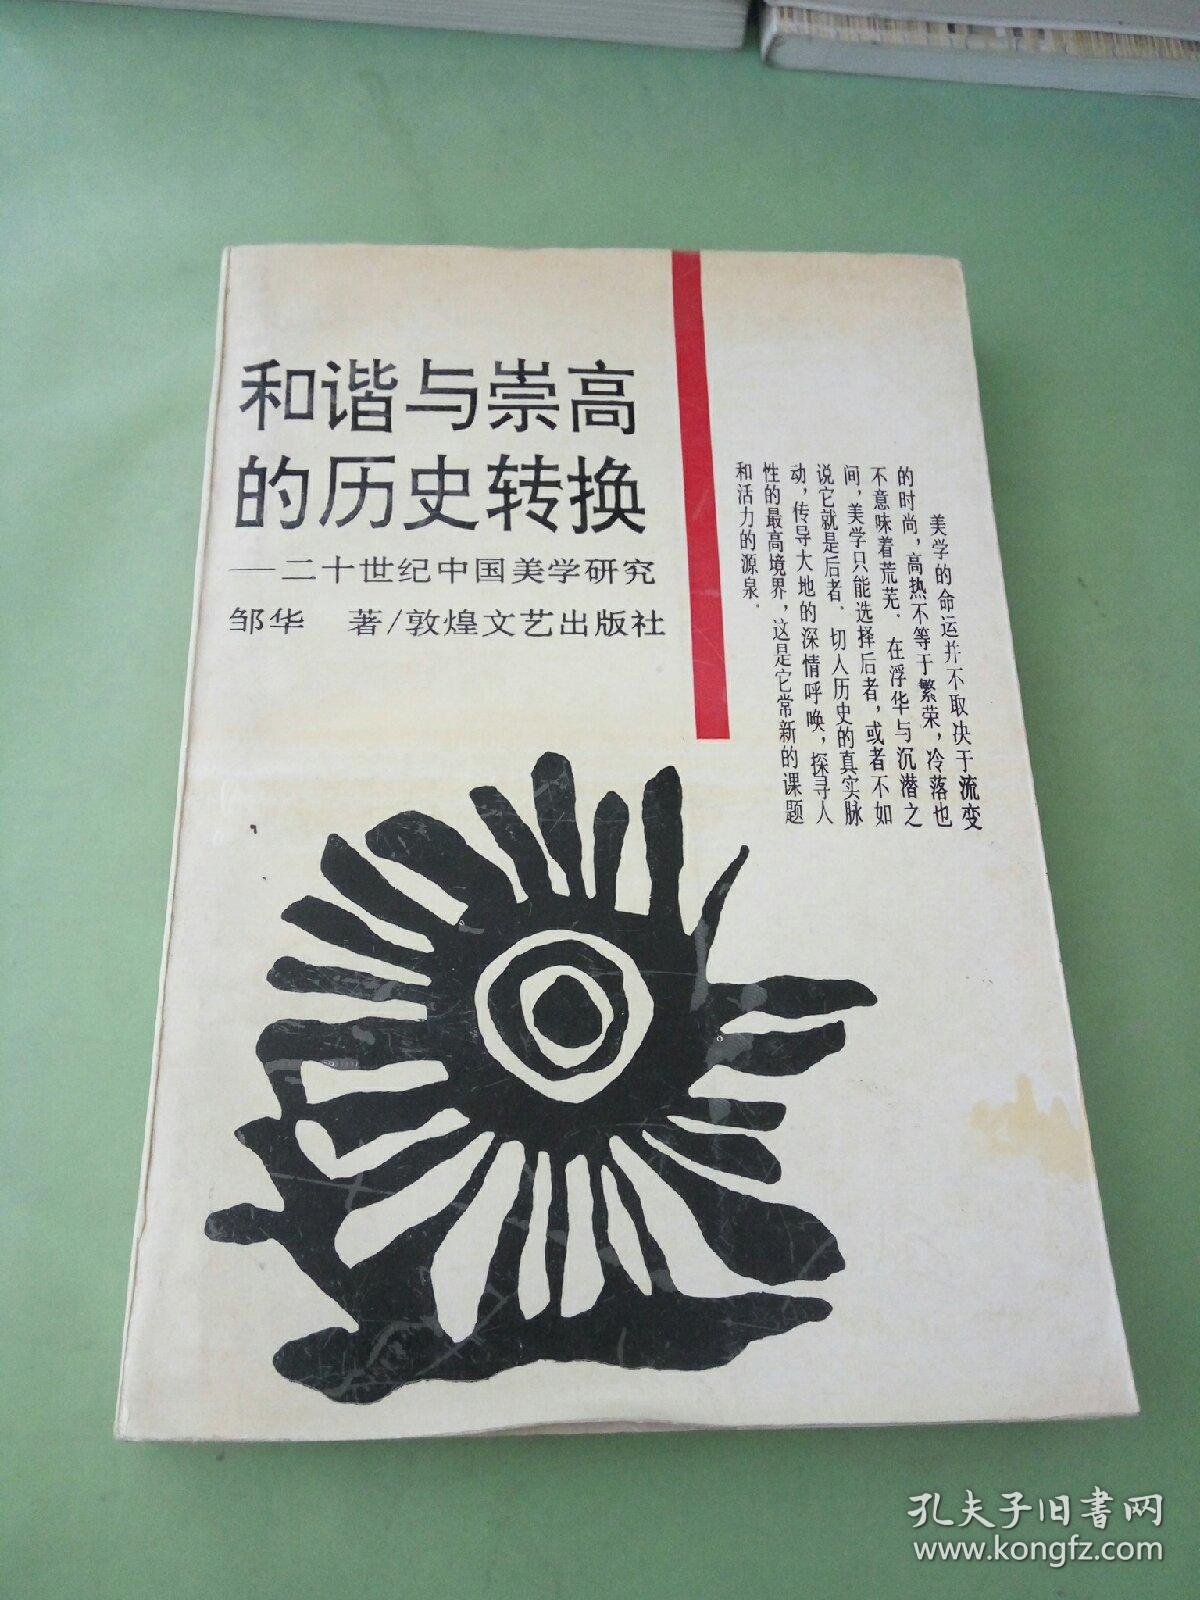 和谐与崇高的历史转换:二十世纪中国美学研究。